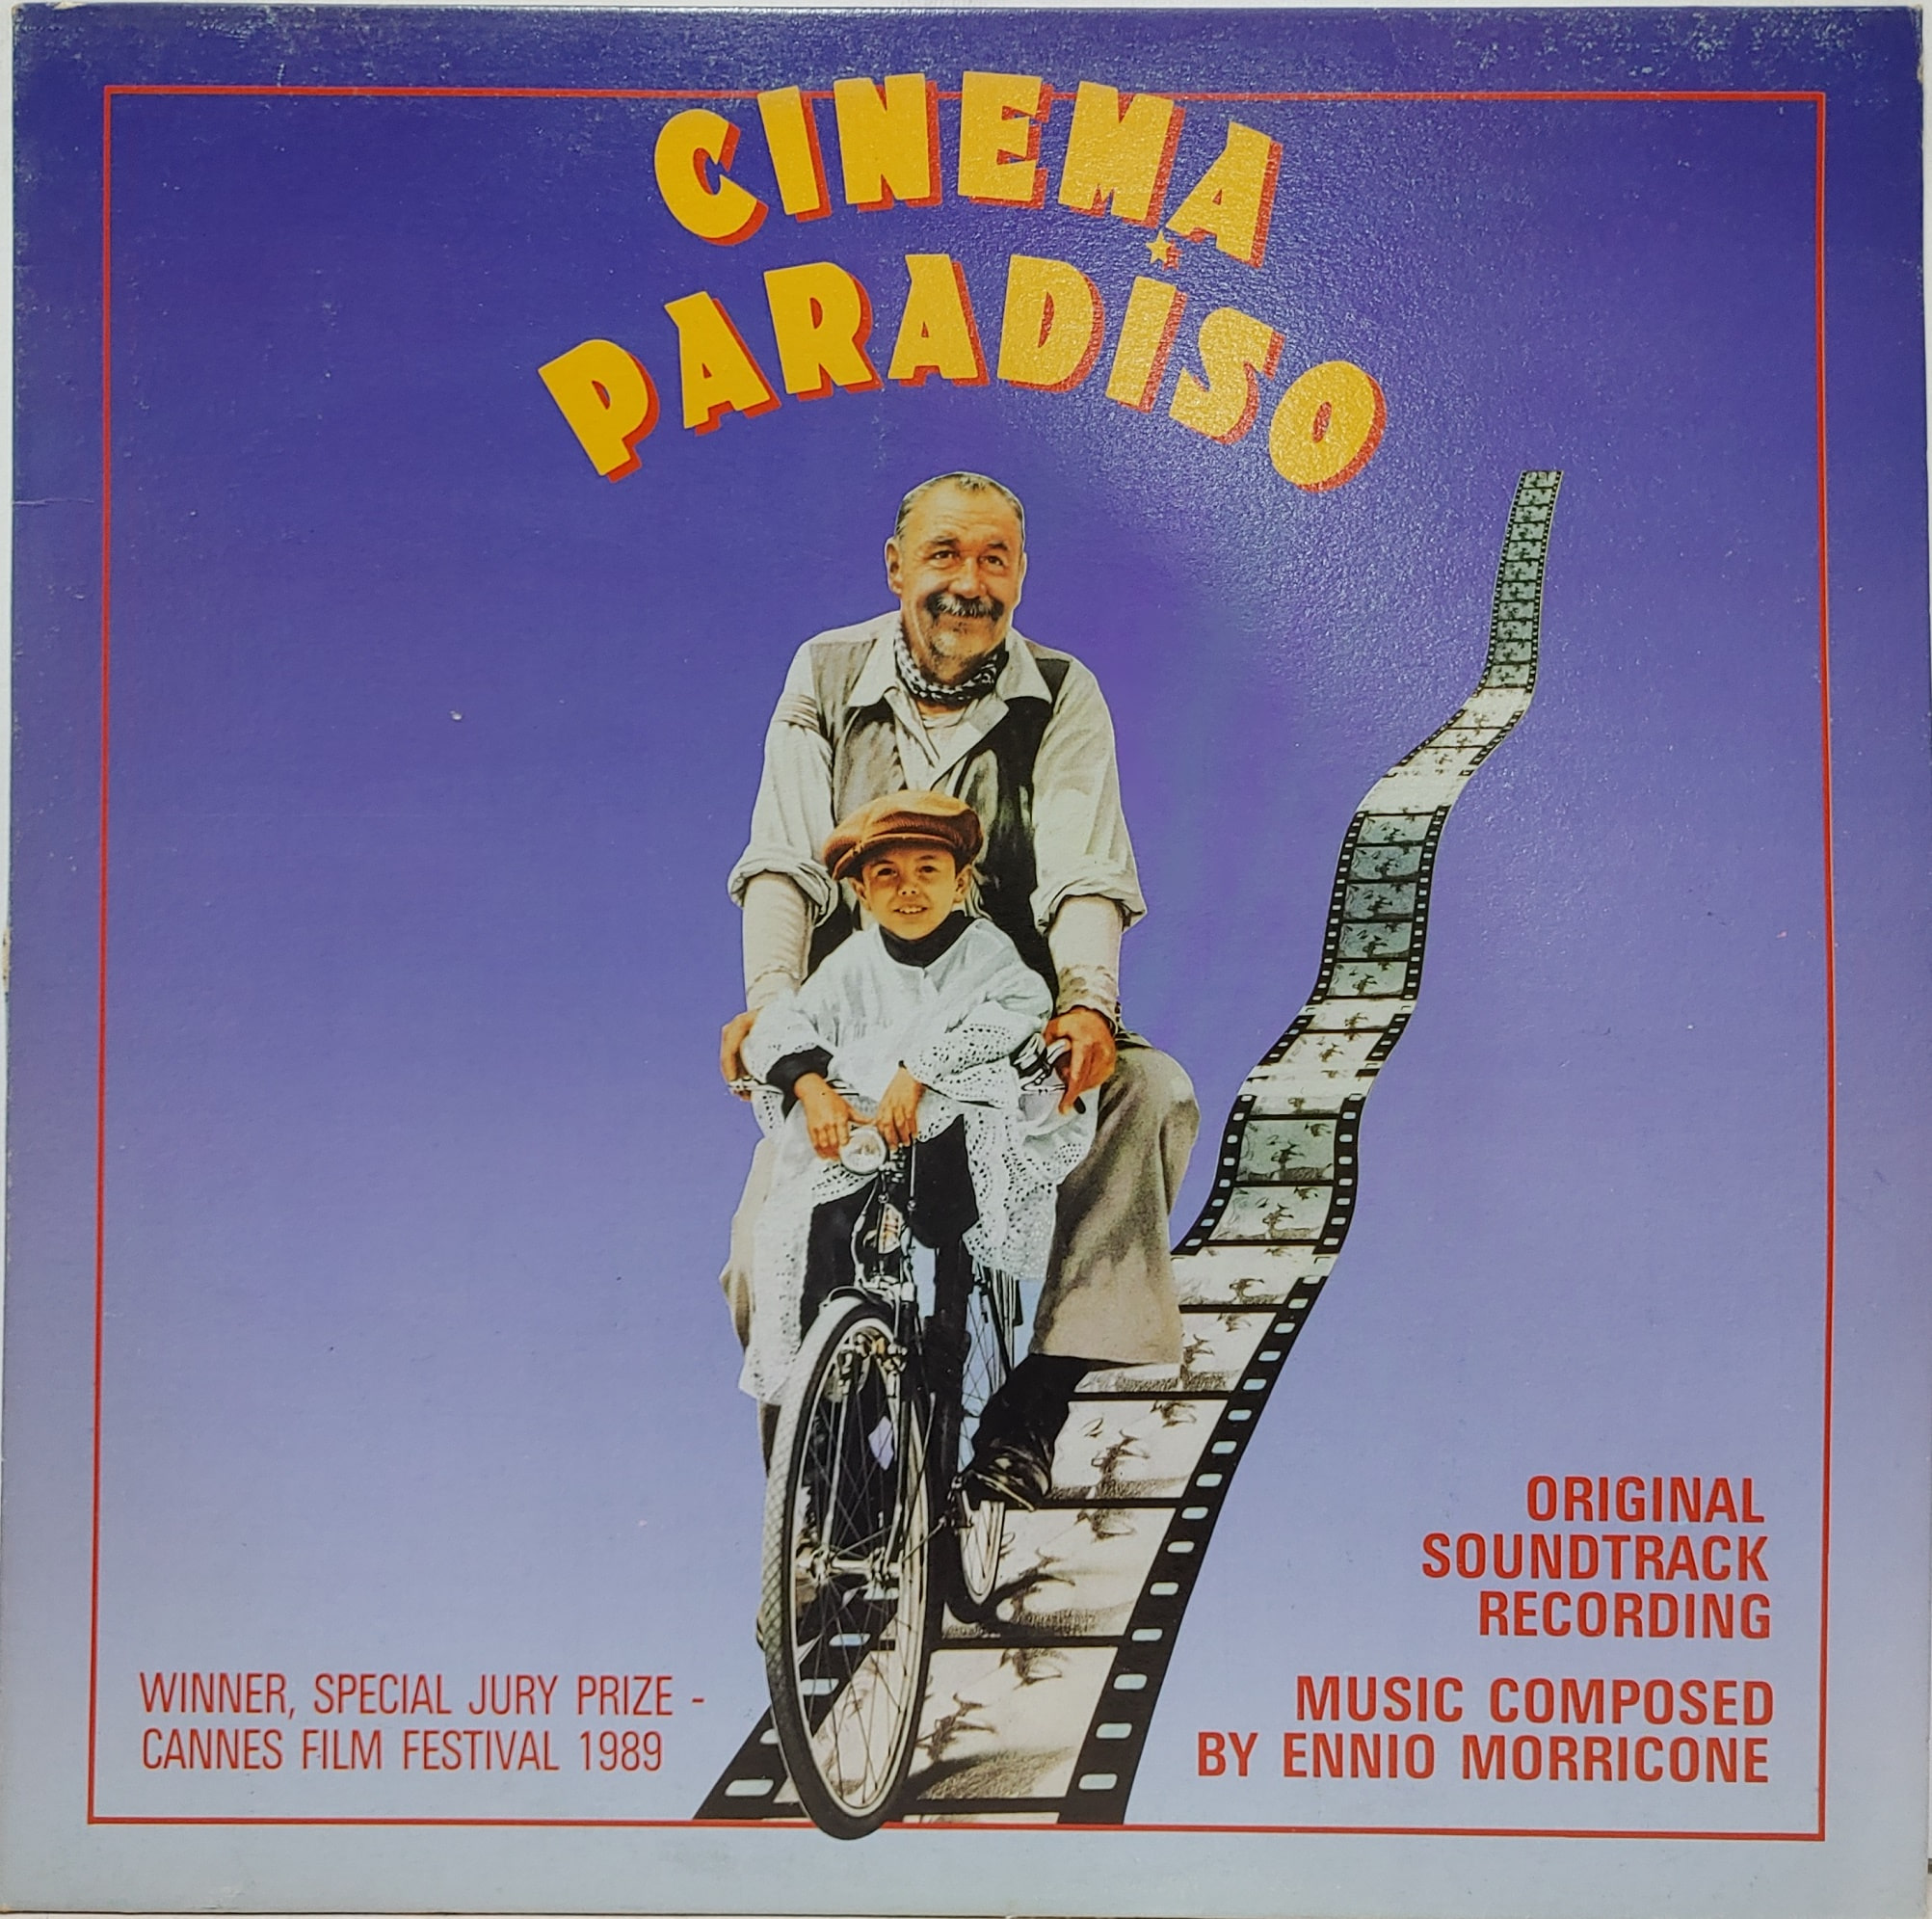 Cinema Paradiso ost(시네마 천국)